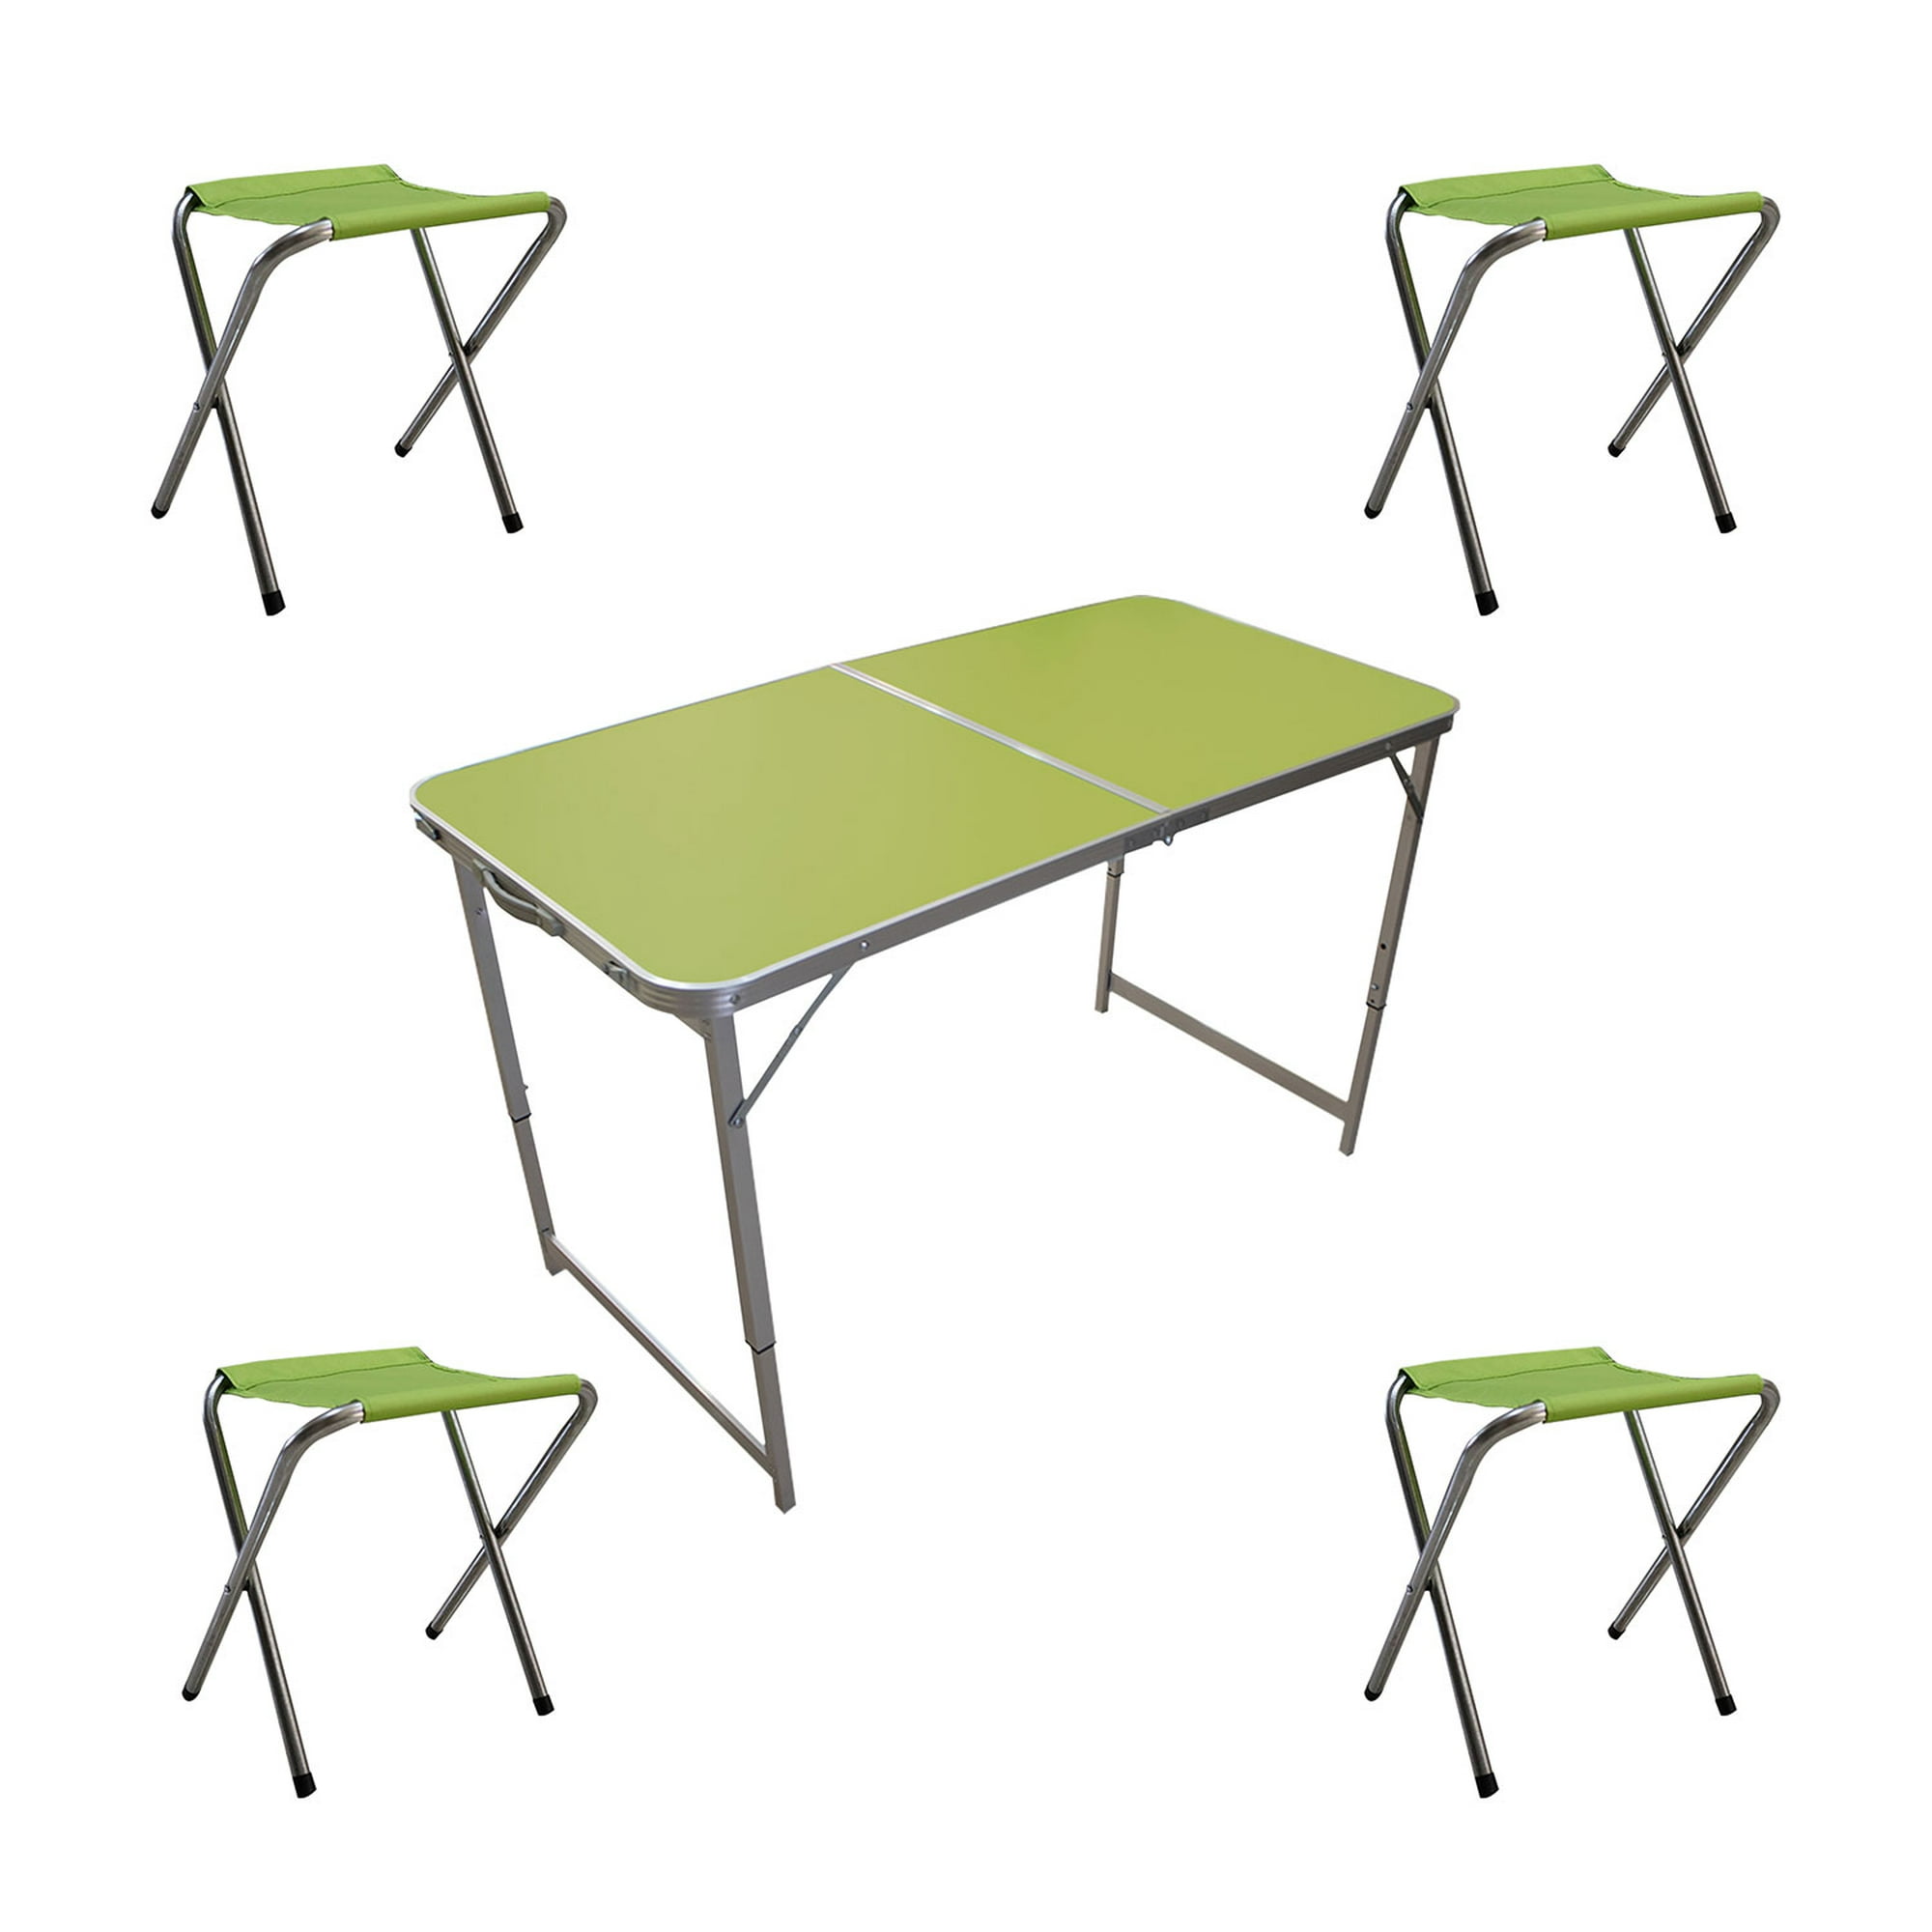 Mesas - Sillas y mesas plegables - Comedor y bar - Muebles y